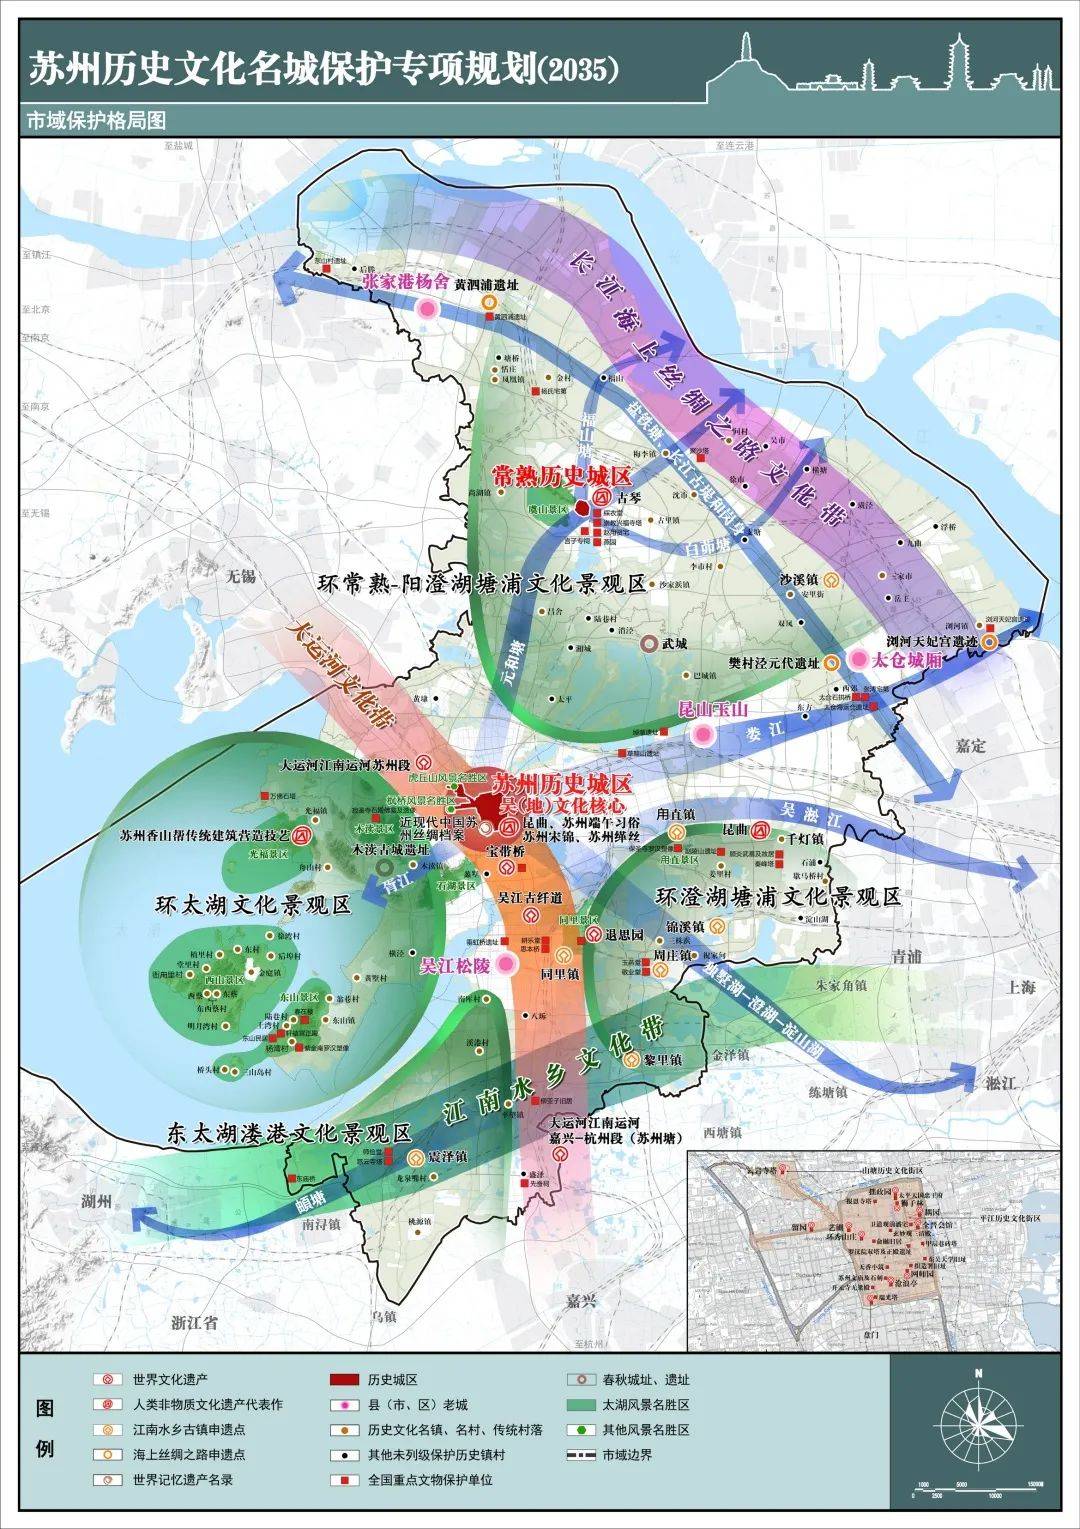 《守护历史 传承文脉——解读《苏州历史文化名城保护专项规划(2035)